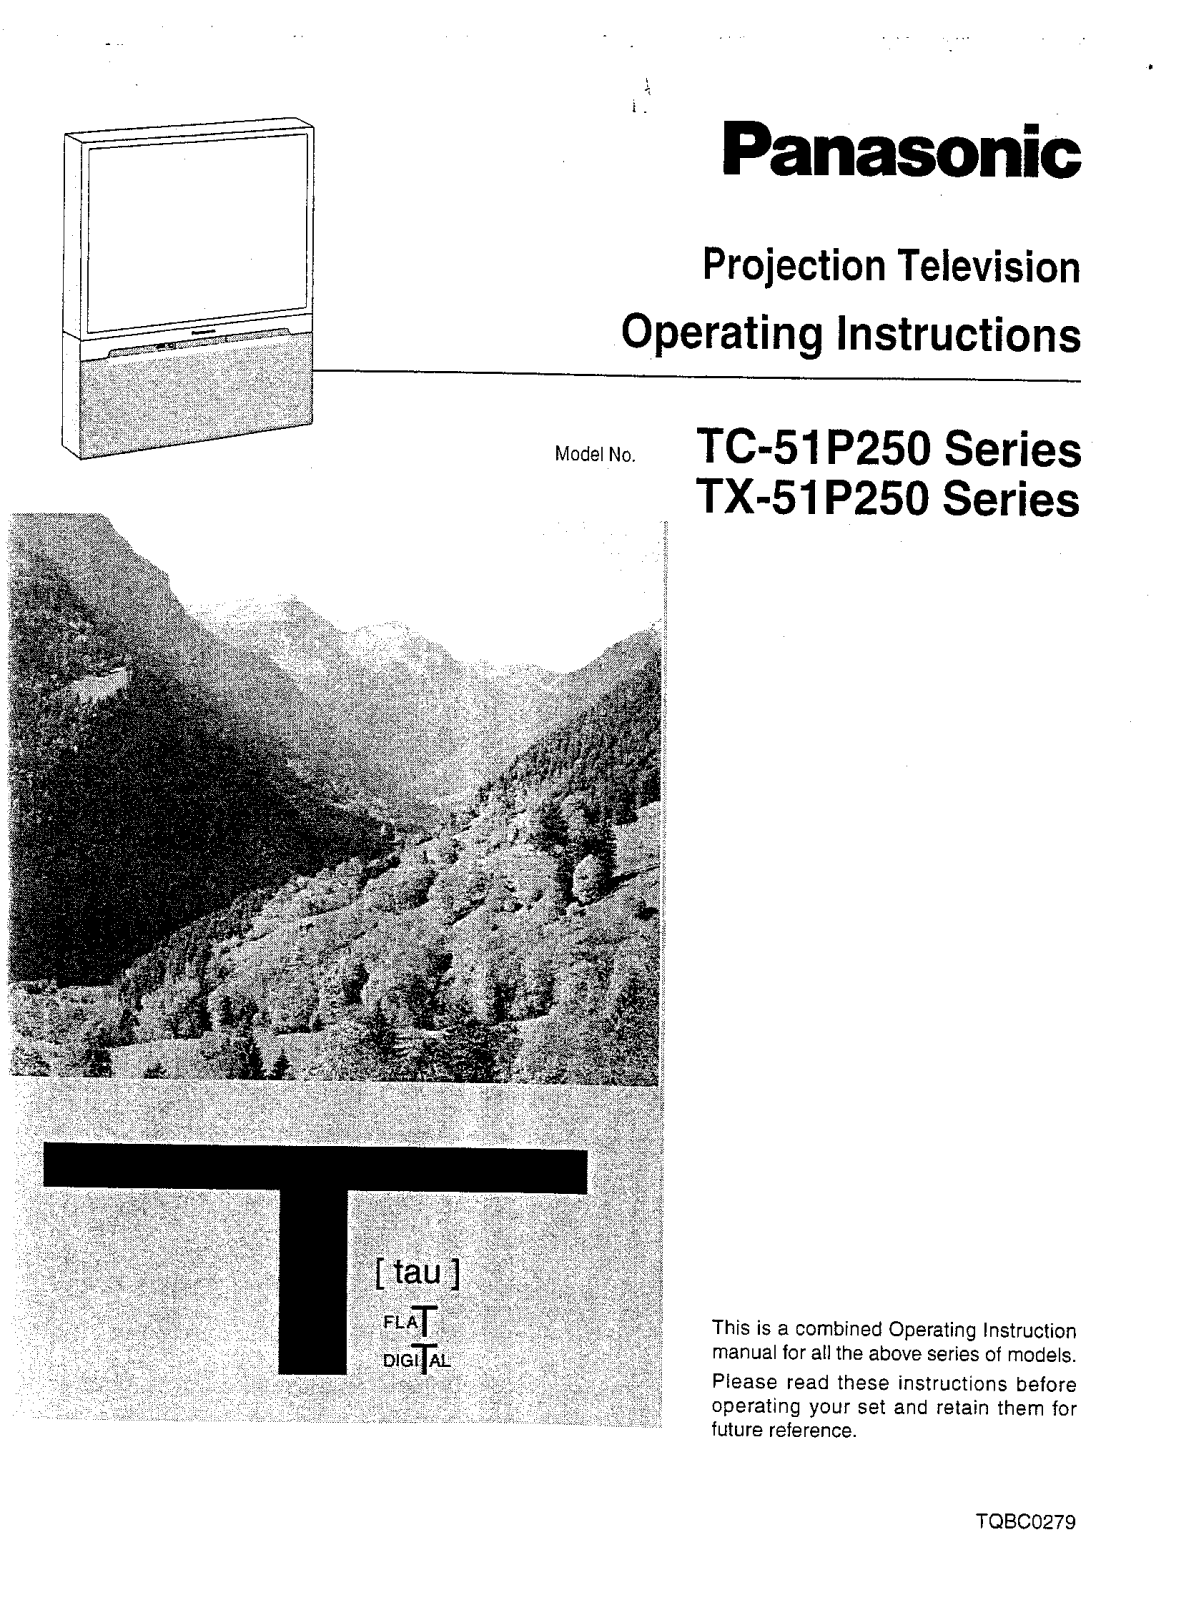 Panasonic TX-51P250, TC-51P250 User Manual